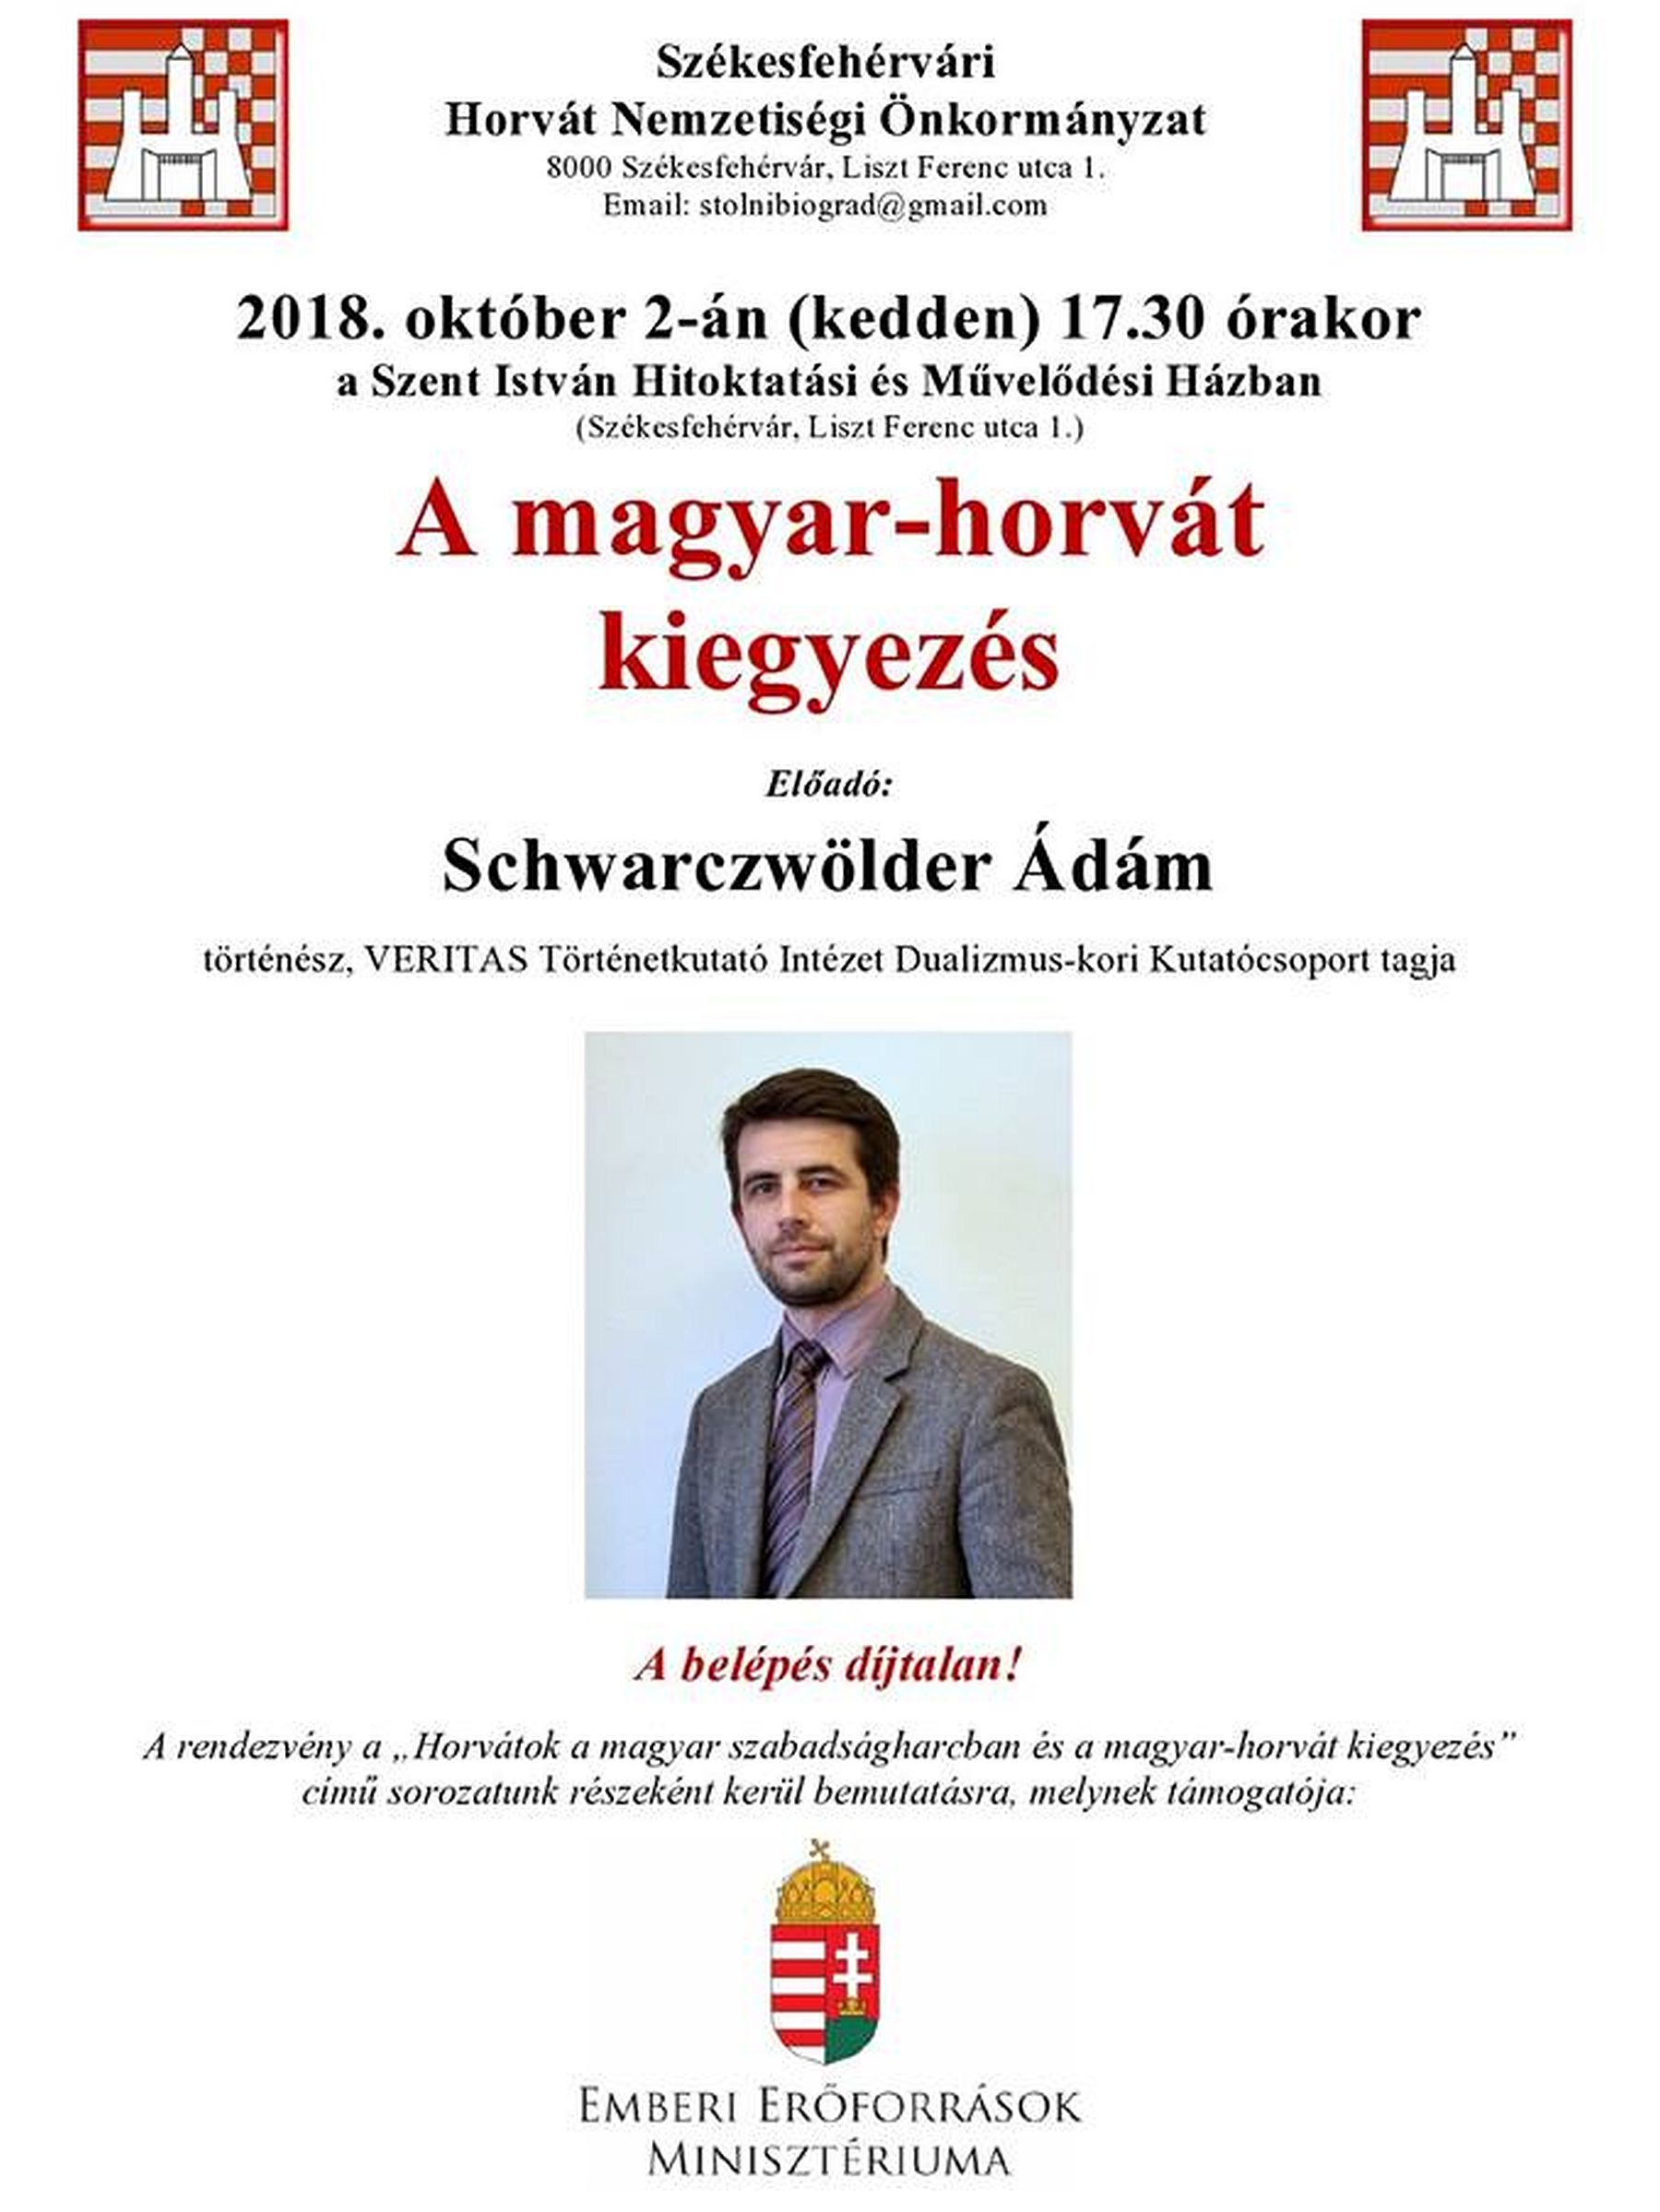 A magyar-horvát kiegyezés - Schwarzwölder Ádám, történész előadása Fehérváron